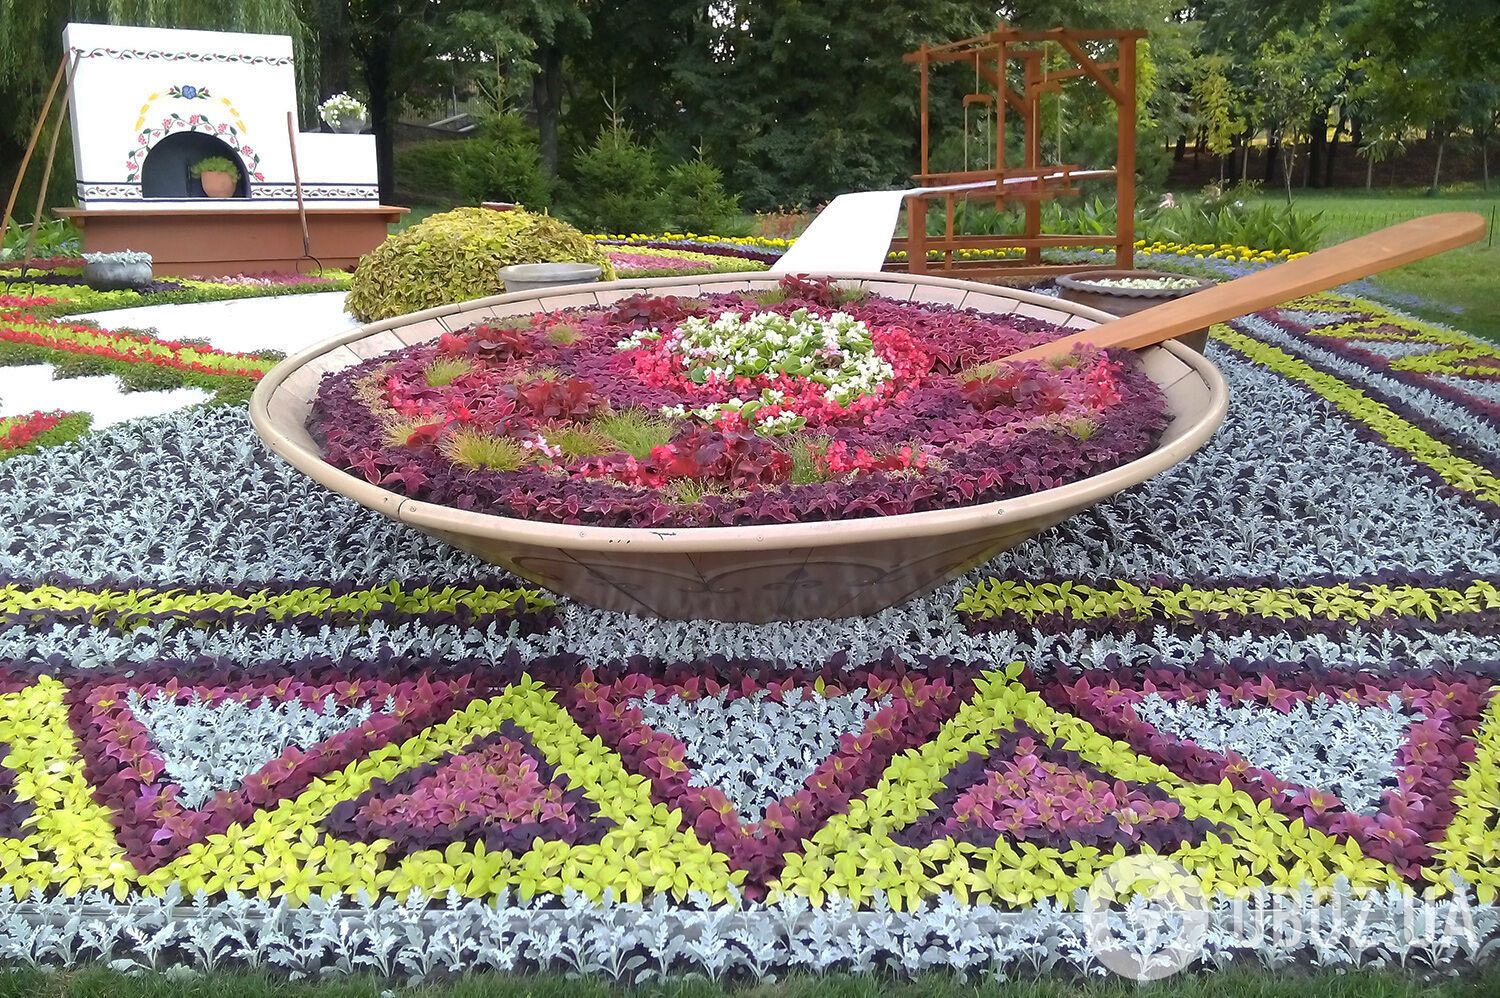 Выставка цветов в Киеве: тарелка борща и гигантские вареники